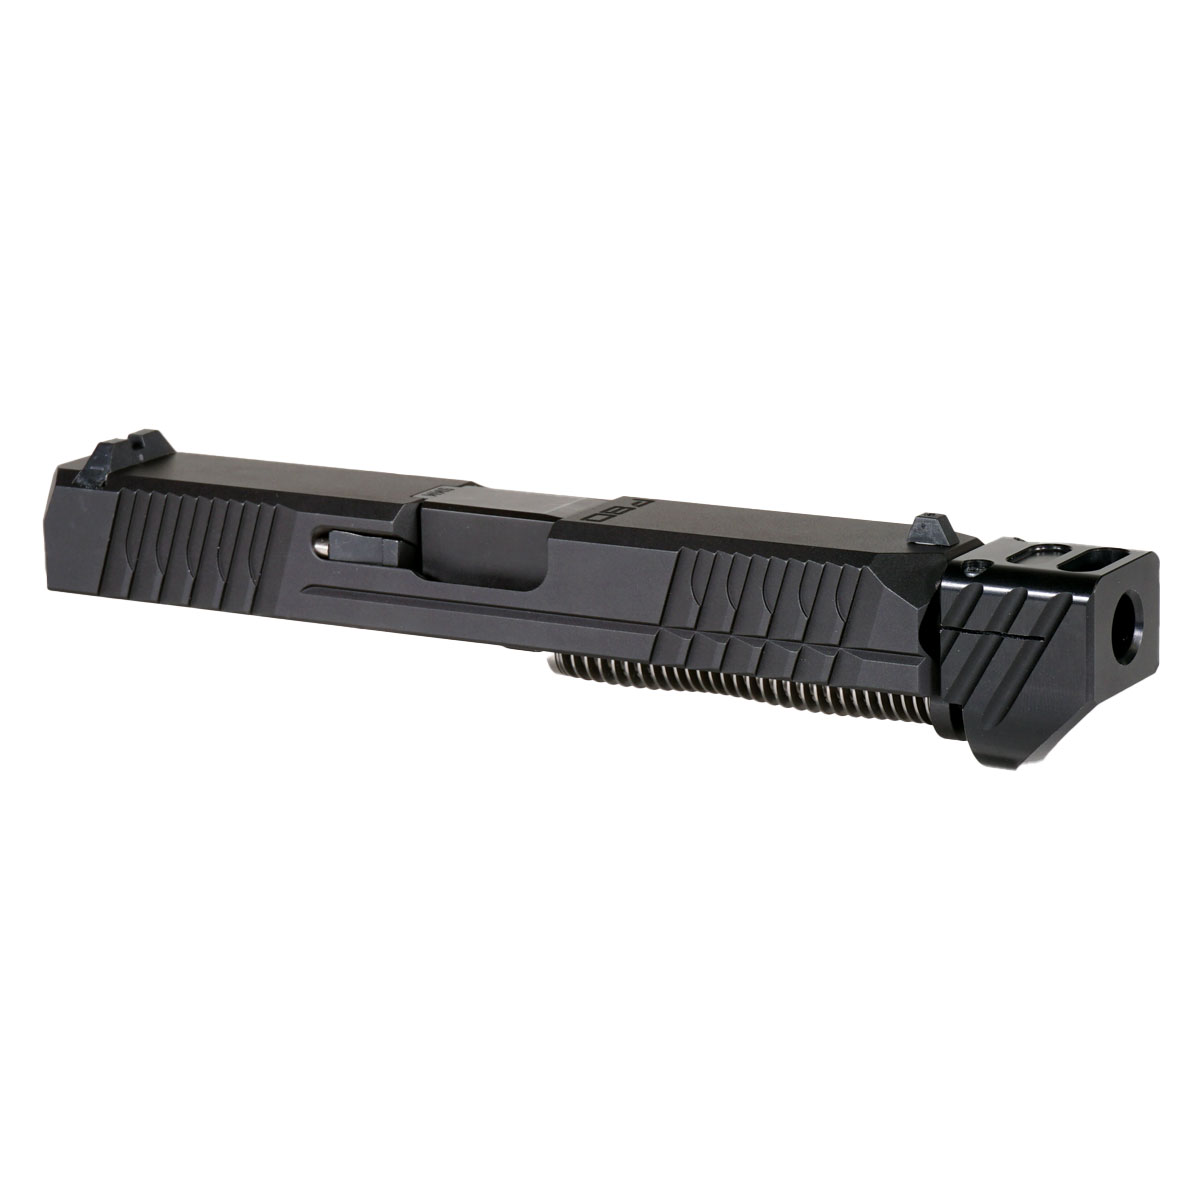 MMC 'Paracausal V4 w/ Black Compensator' 9mm Complete Slide Kit - Glock 19 Gen 1-3 Compatible